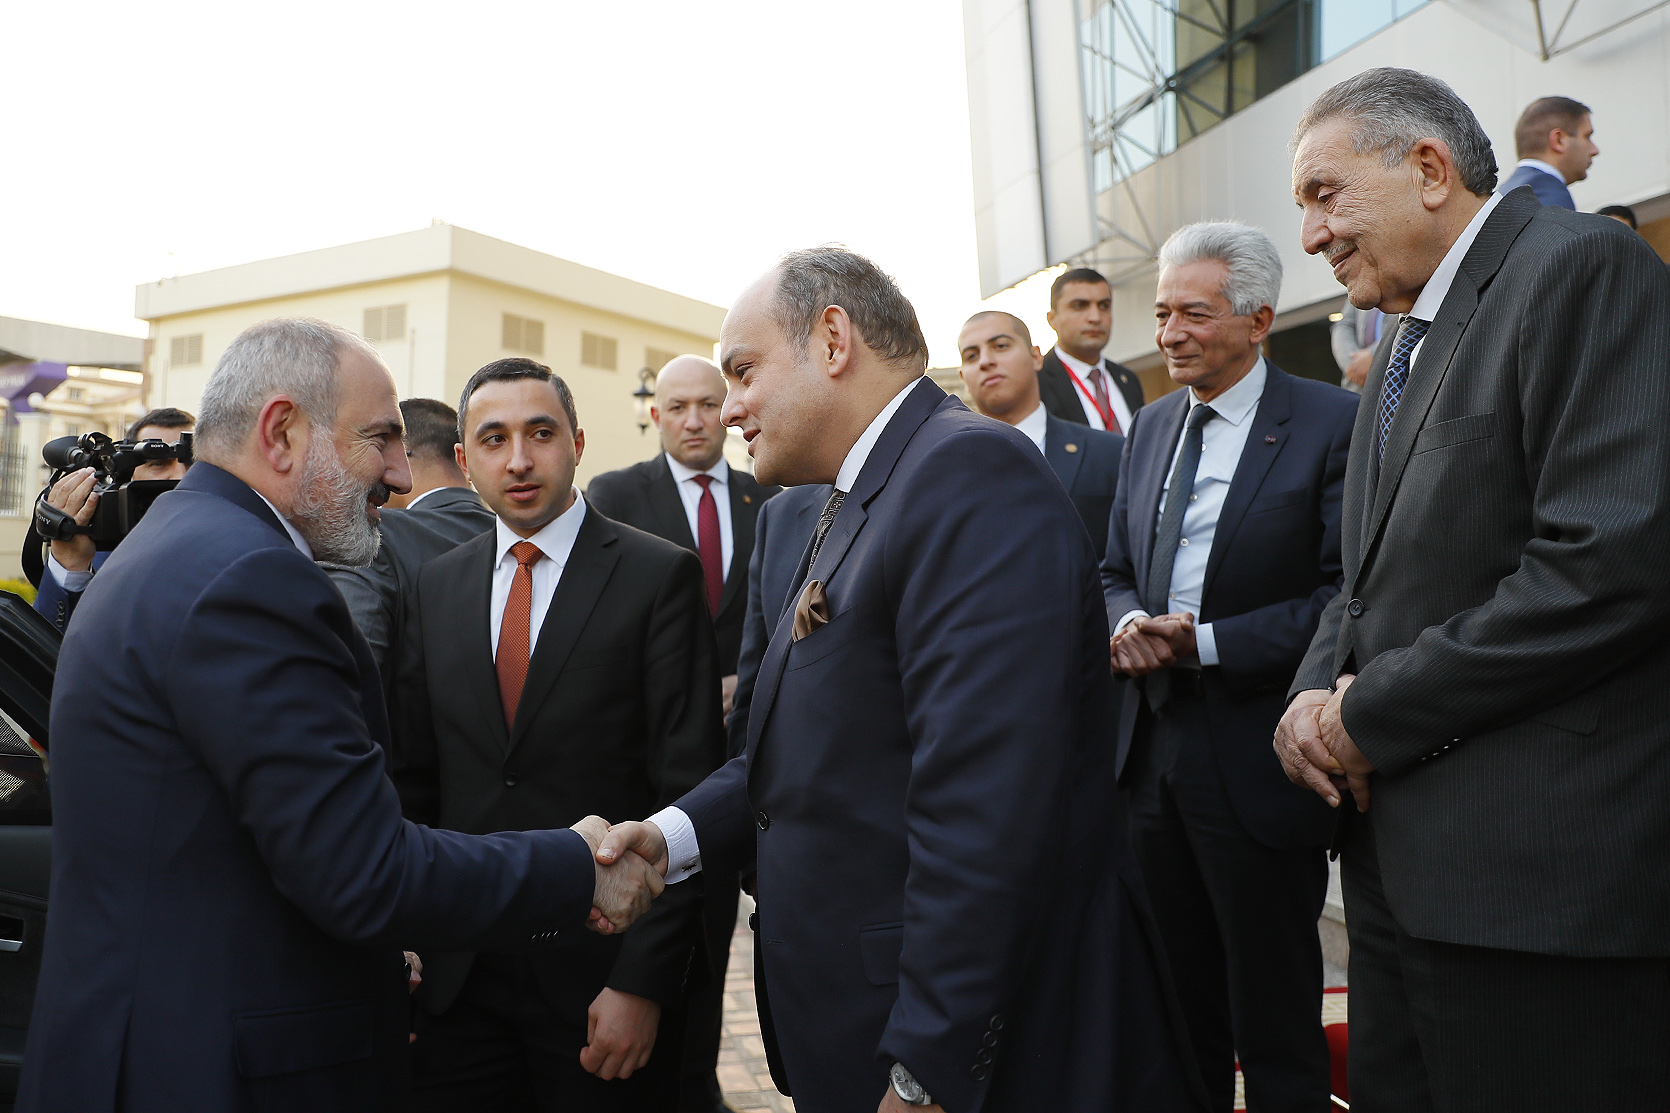 Մեր նպատակն է Հայաստանը դարձնել բարձր տեխնոլոգիական տնտեսություն ունեցող երկիր. վարչապետը հանդիպել է եգիպտացի գործարարներին